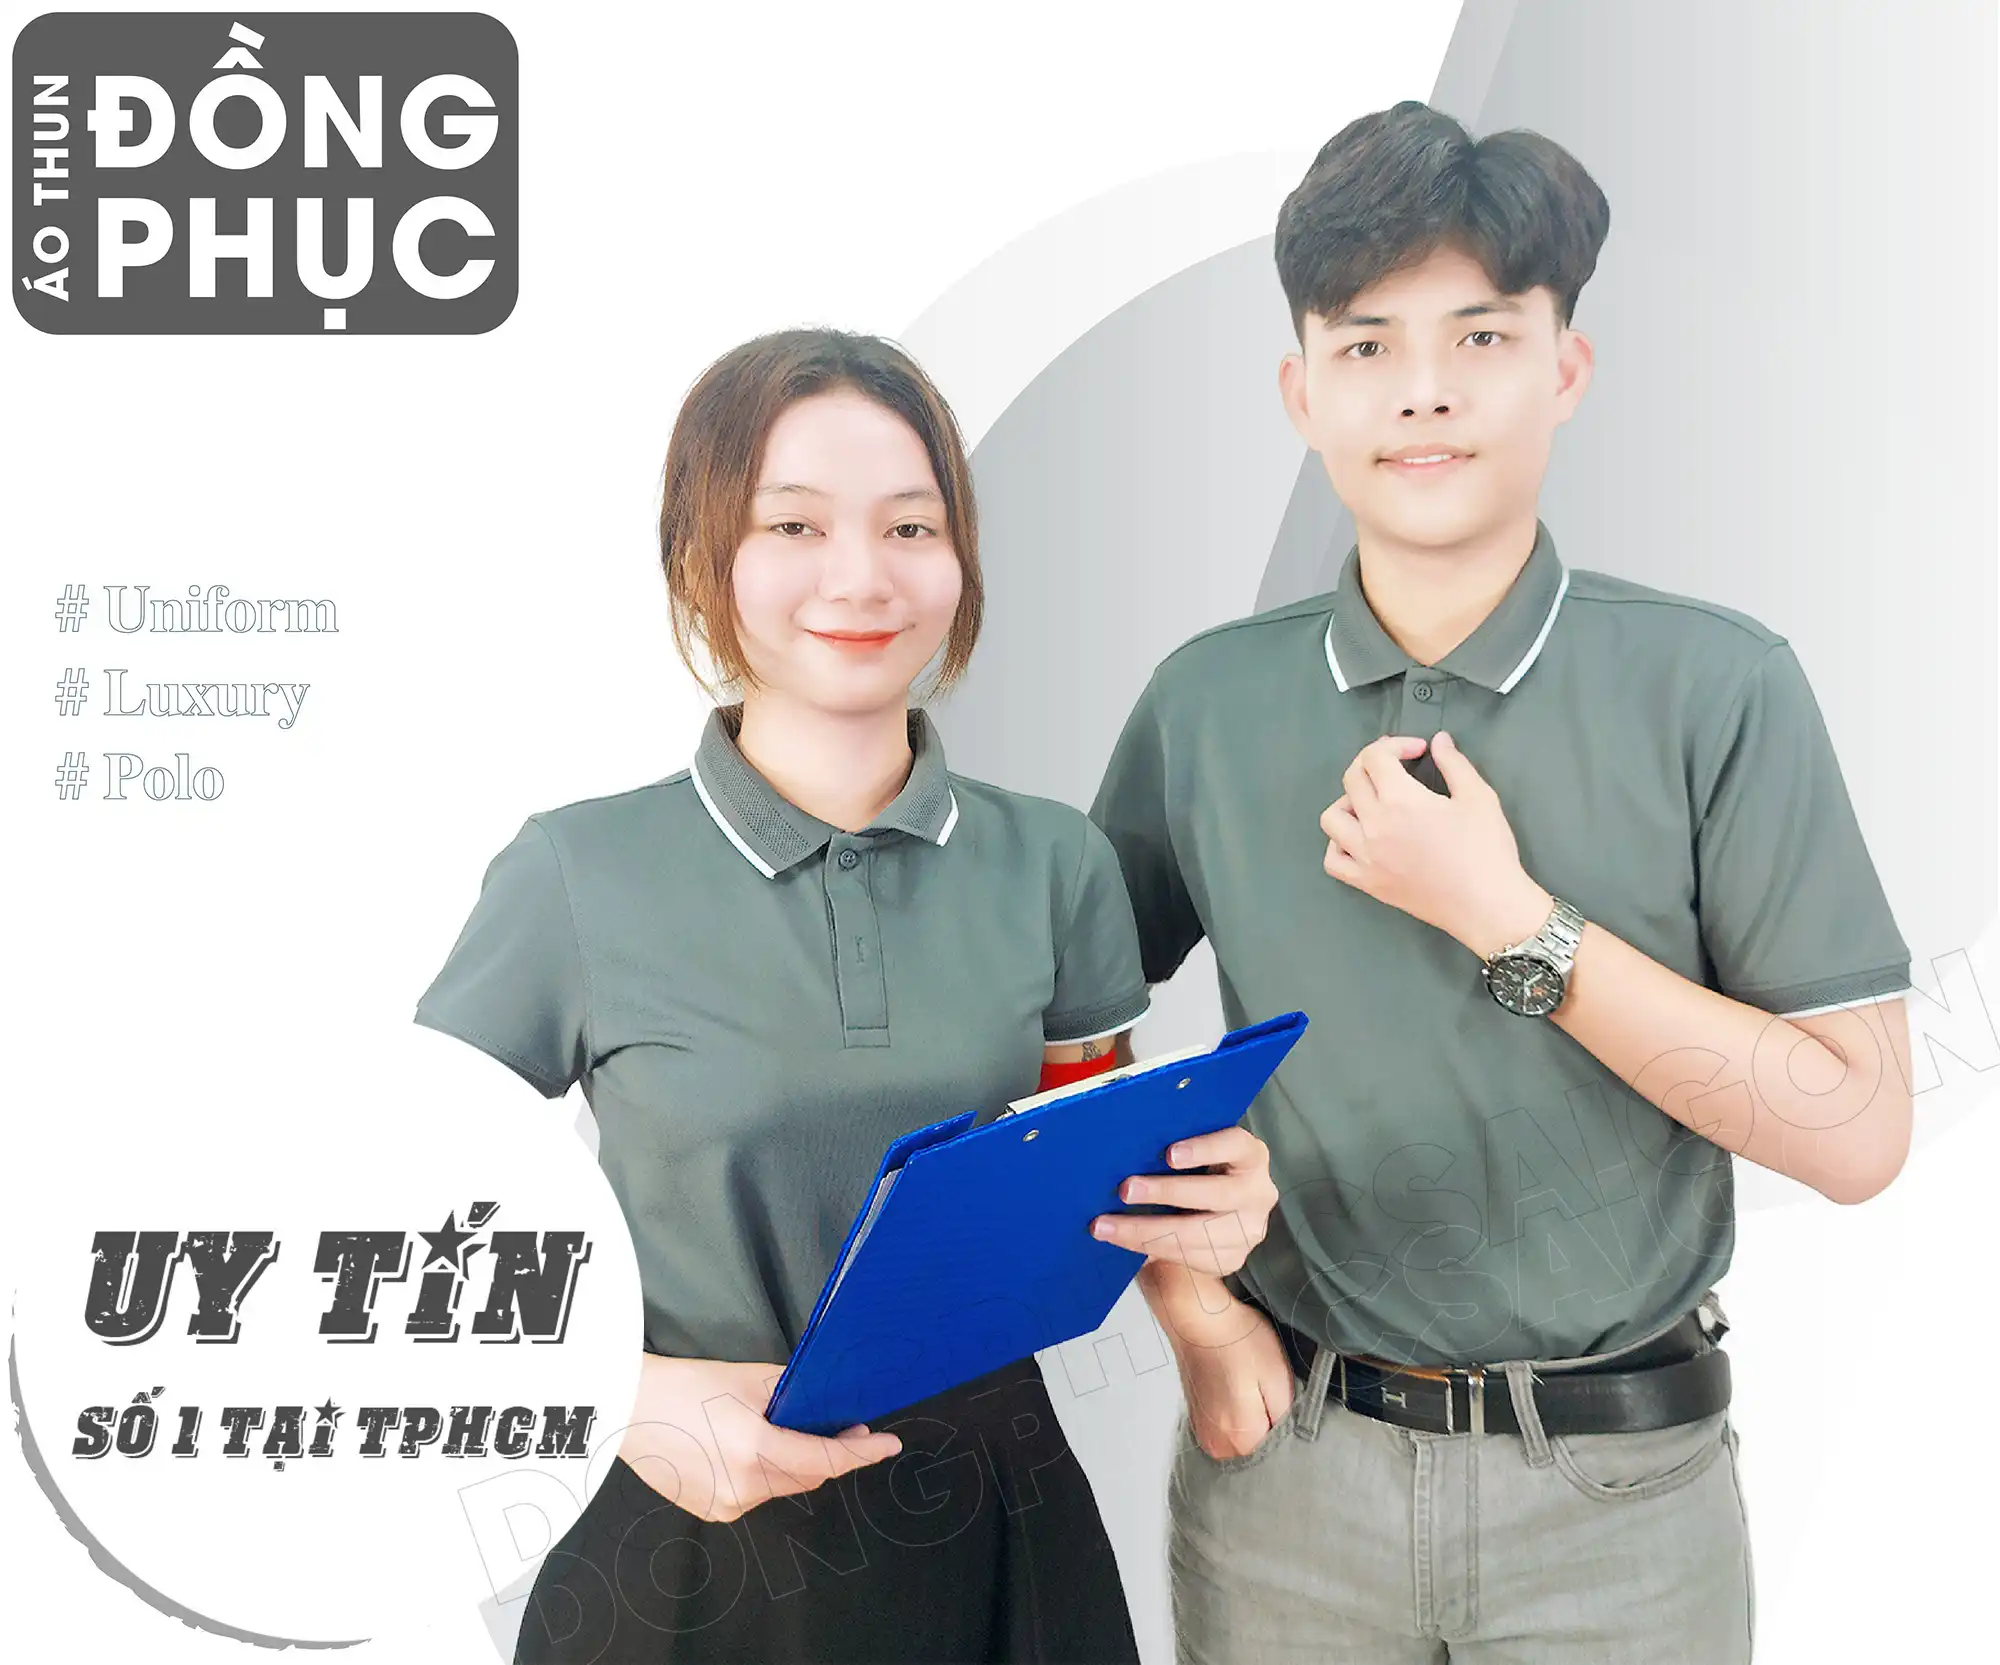 Quy trình sản xuất áo thun đồng phục tại Đồng Phục Sài Gòn - TV32 AT LAN 3 1395